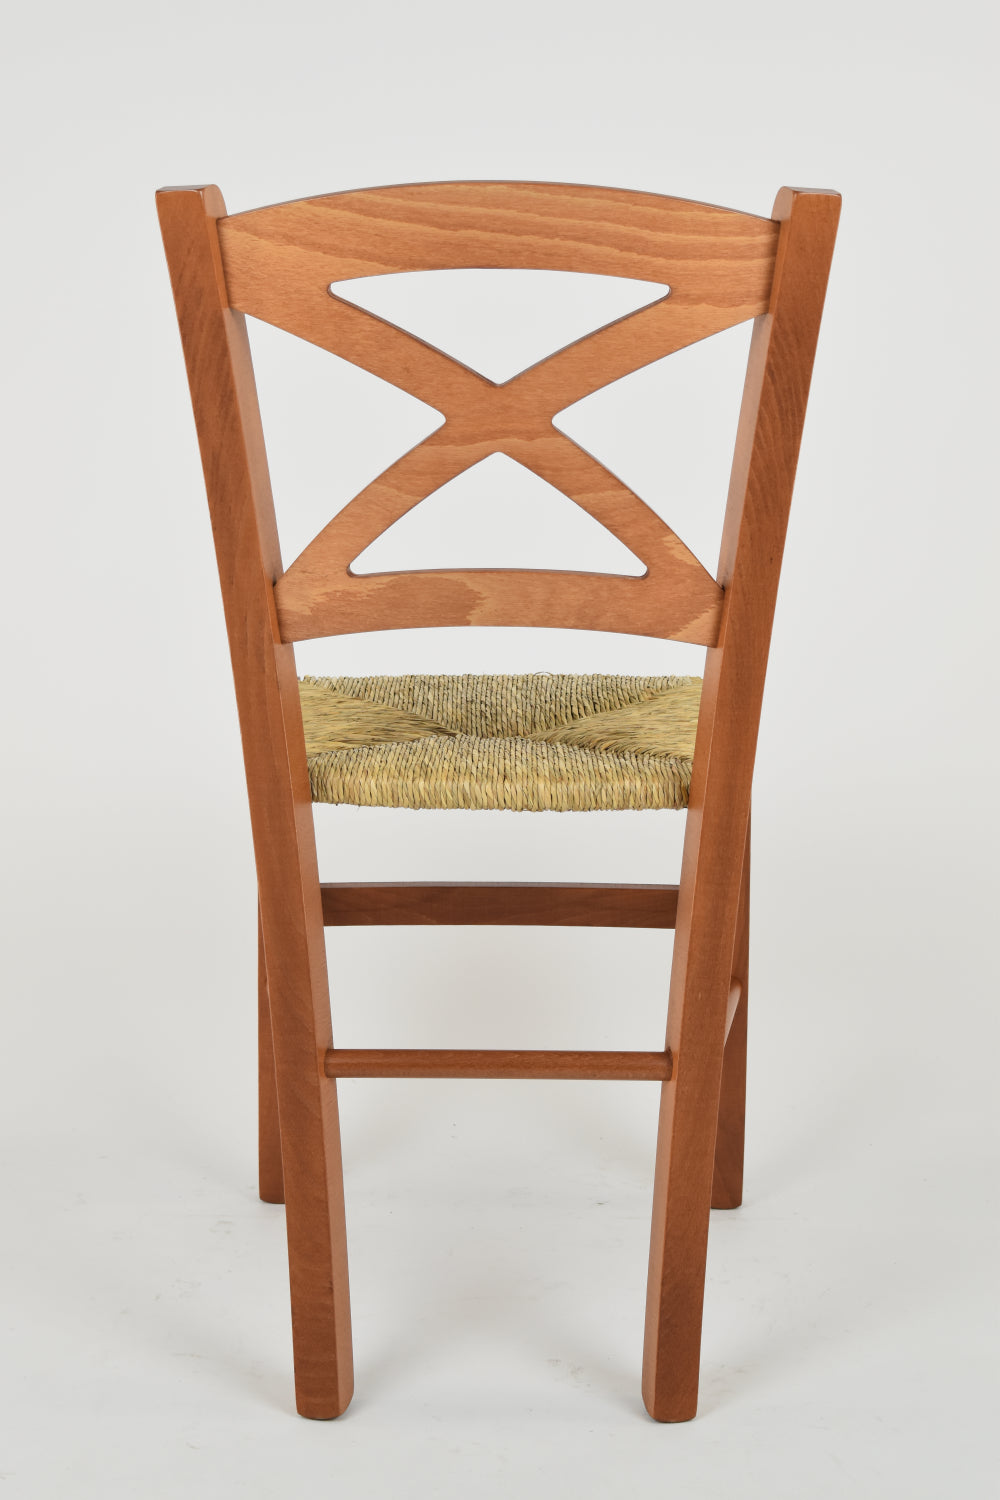 Tommychairs - Set 4 sillas de Cocina y Comedor Cross, Estructura en Madera de Haya Color Cerezo y Asiento en Paja